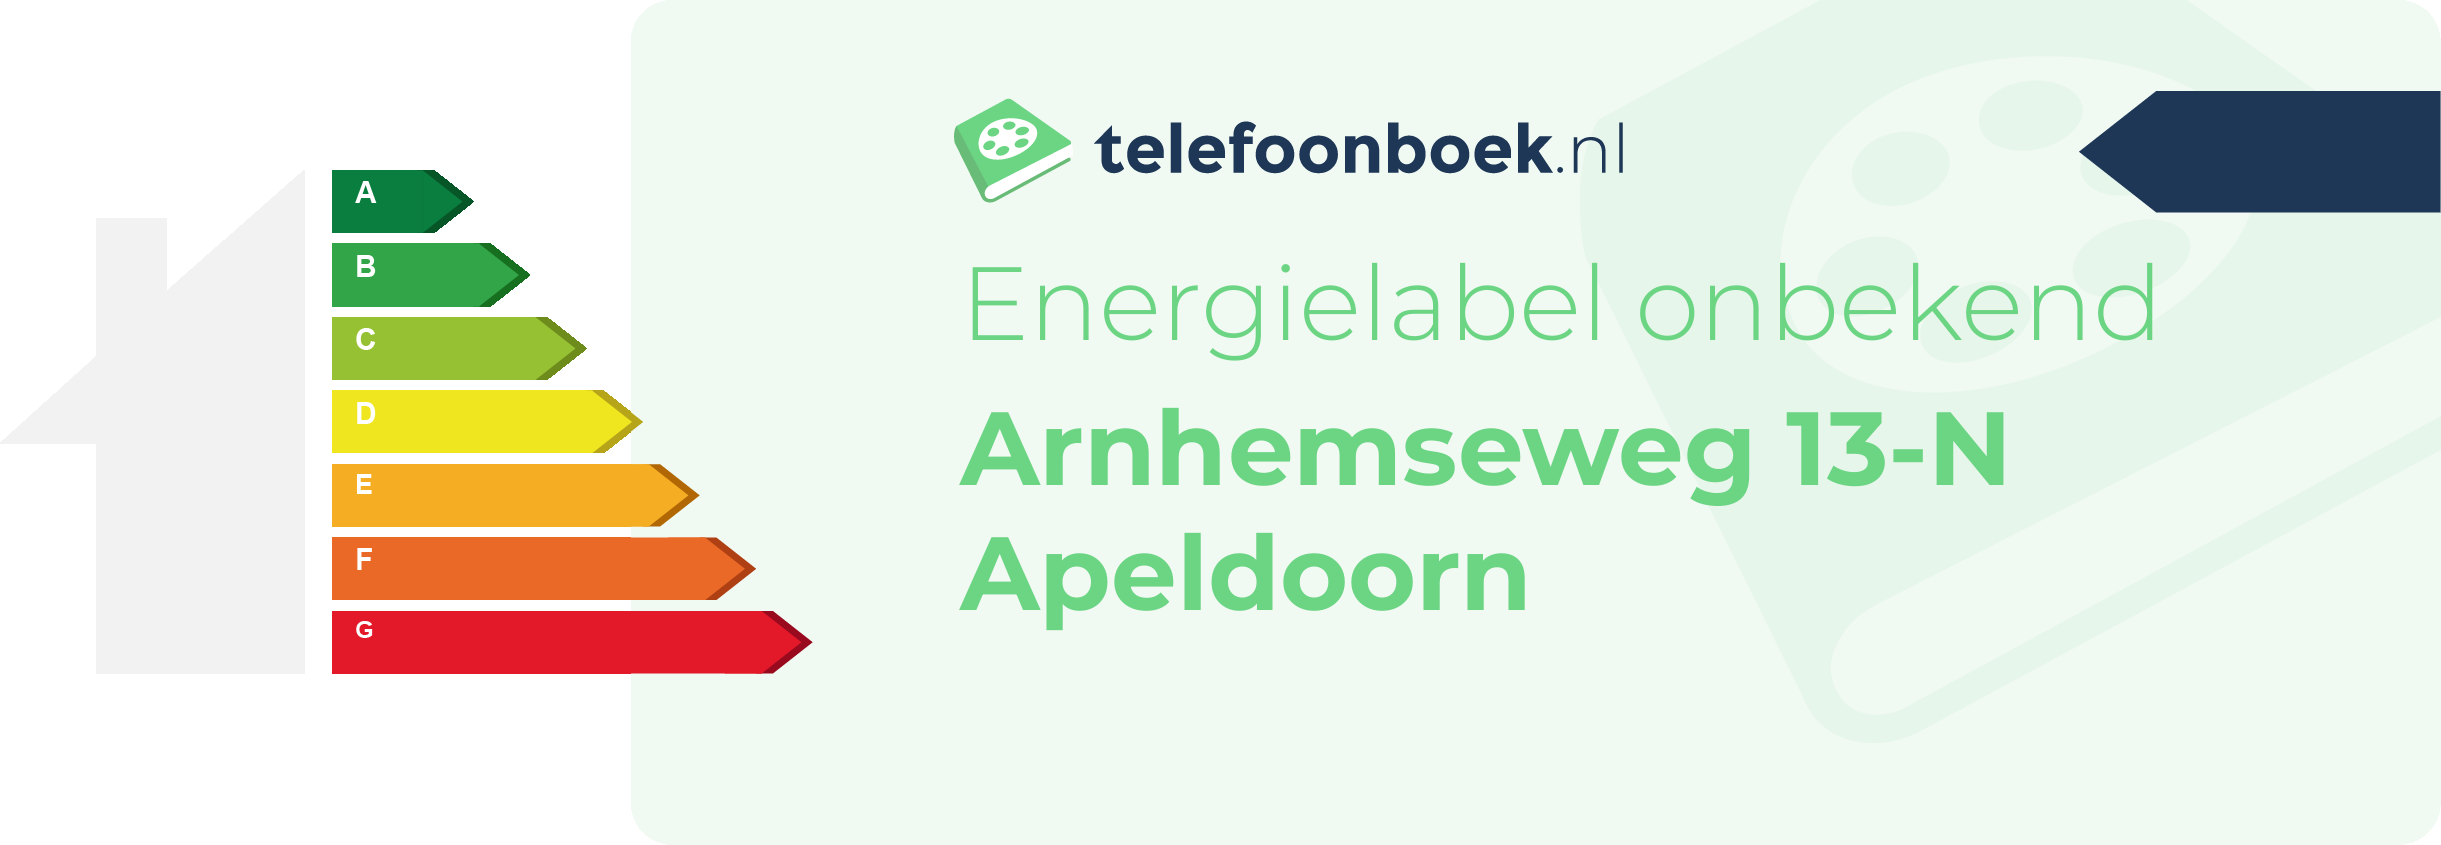 Energielabel Arnhemseweg 13-N Apeldoorn